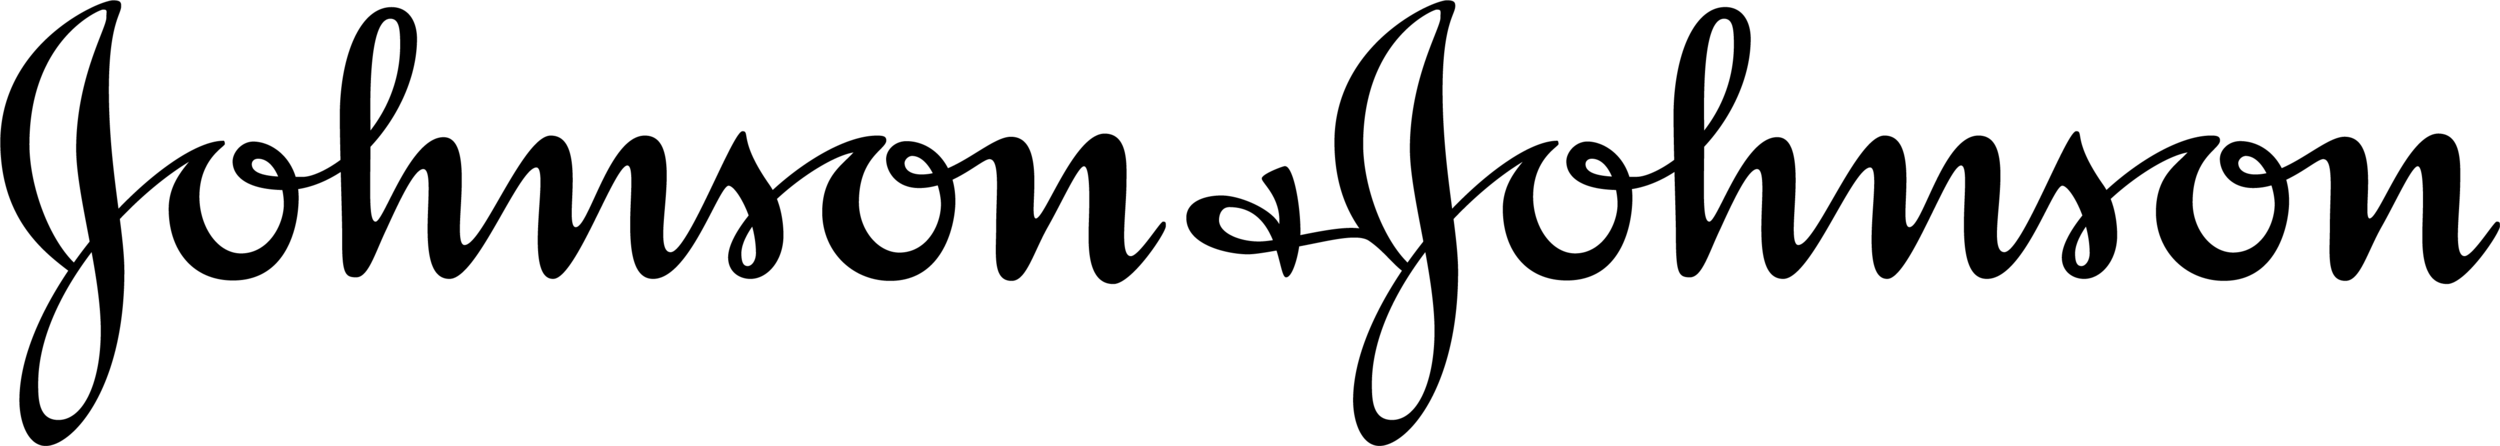 Logo-17.png